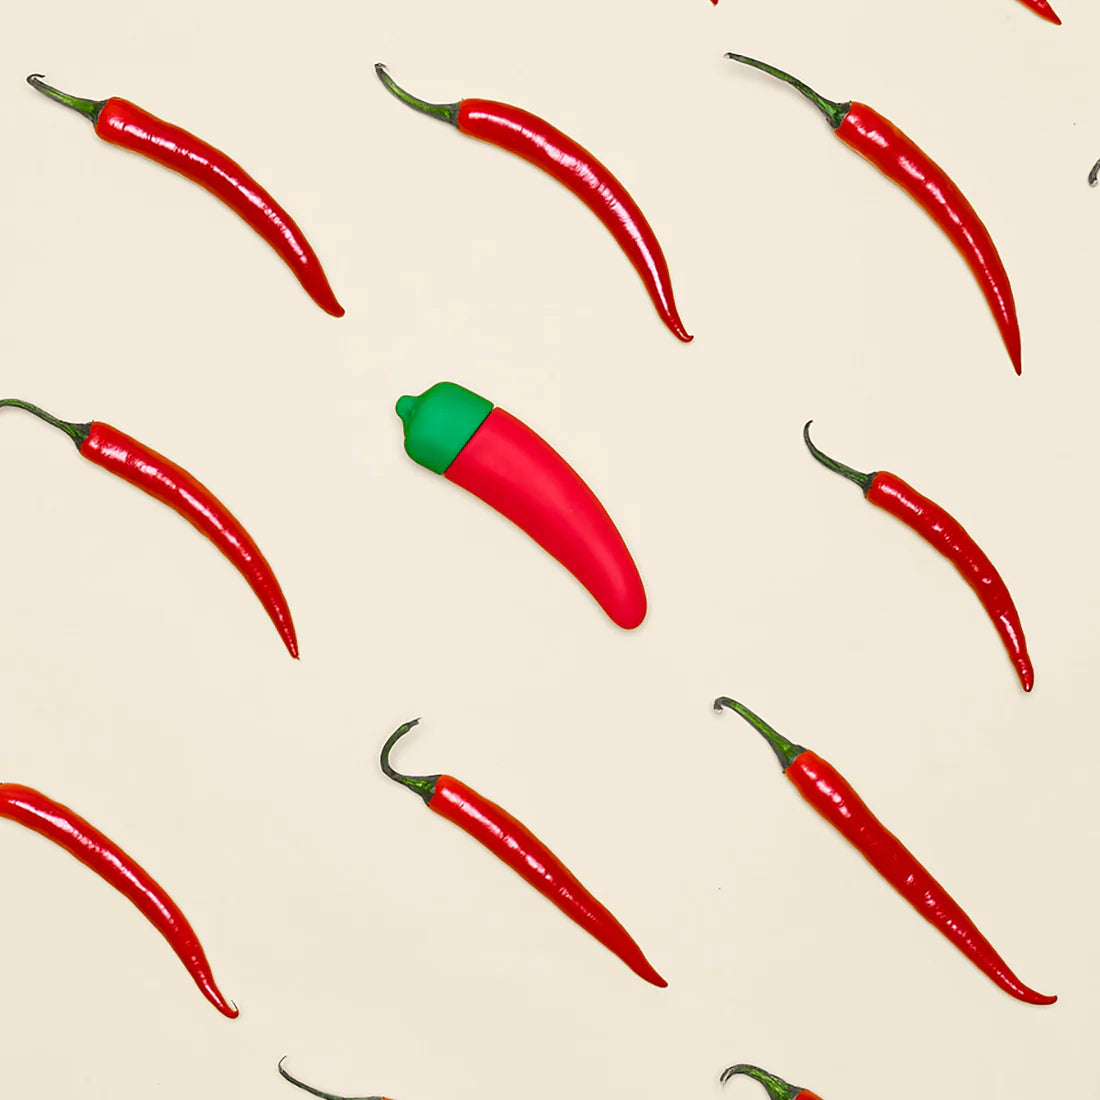 Emojibator Chili Pepper Emoji Vibrator